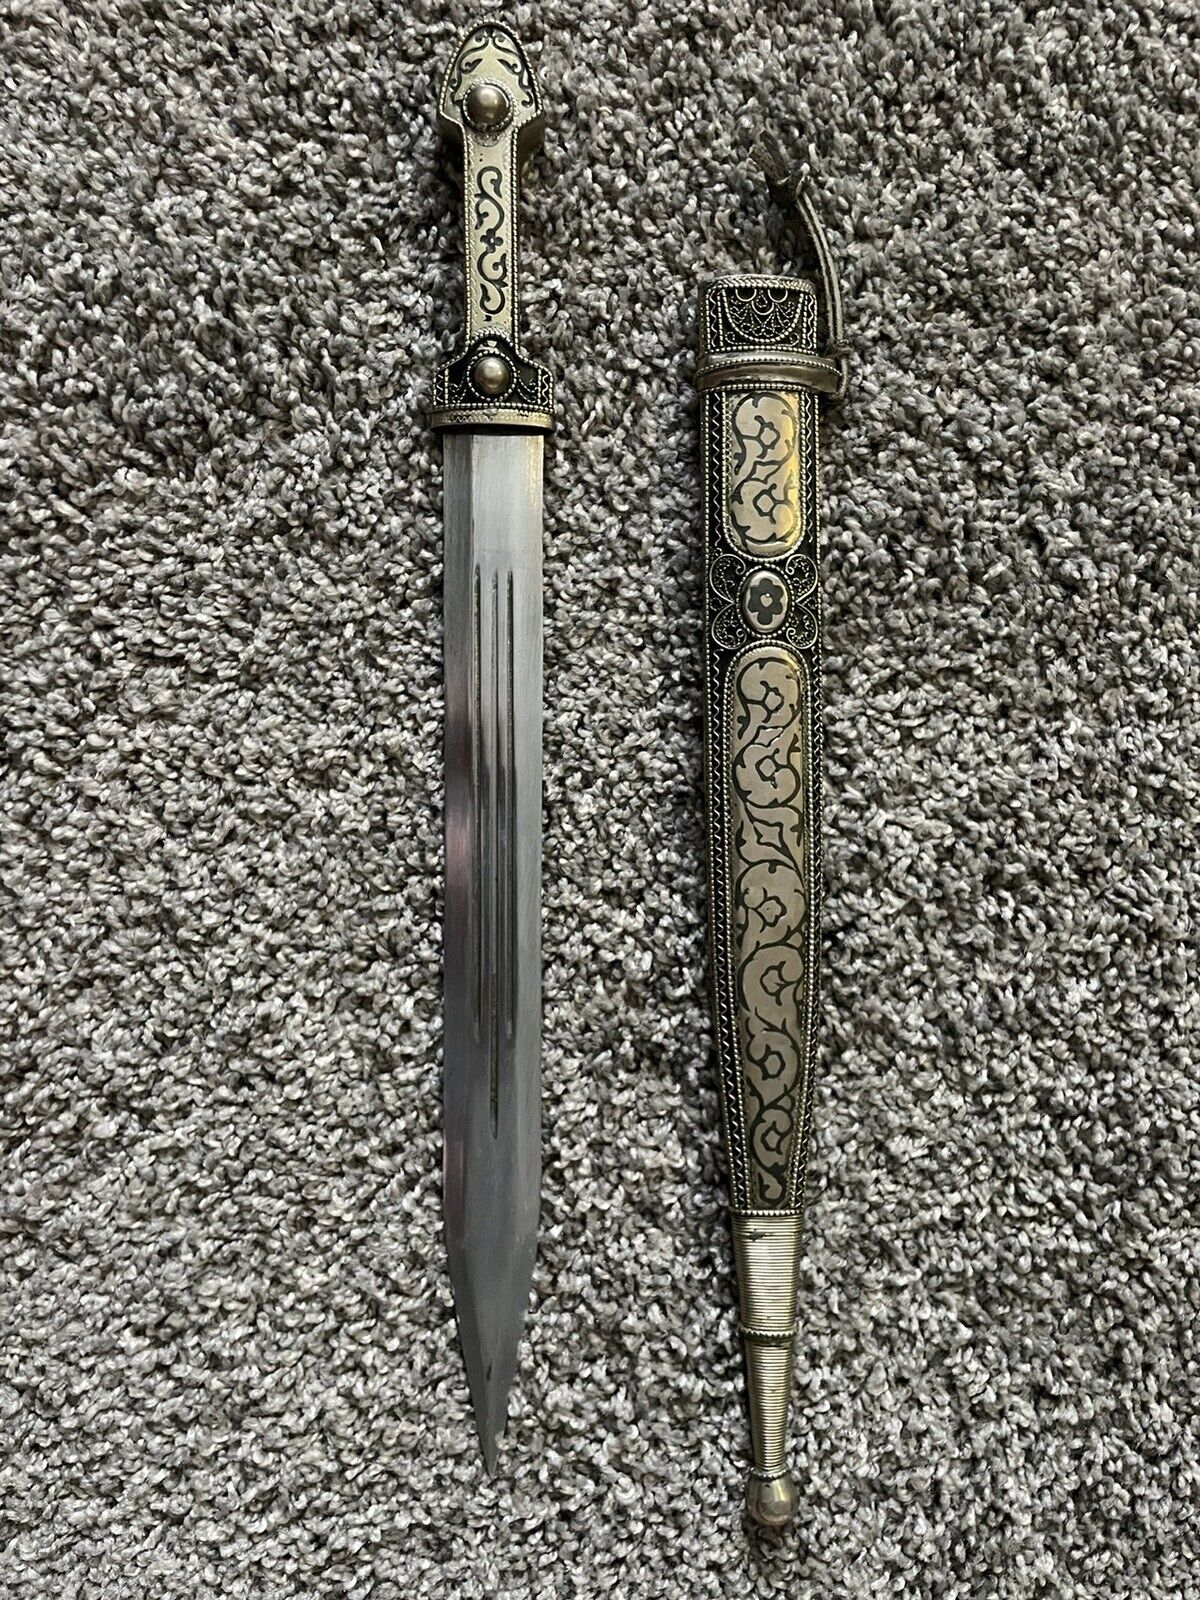 Caucasian dagger